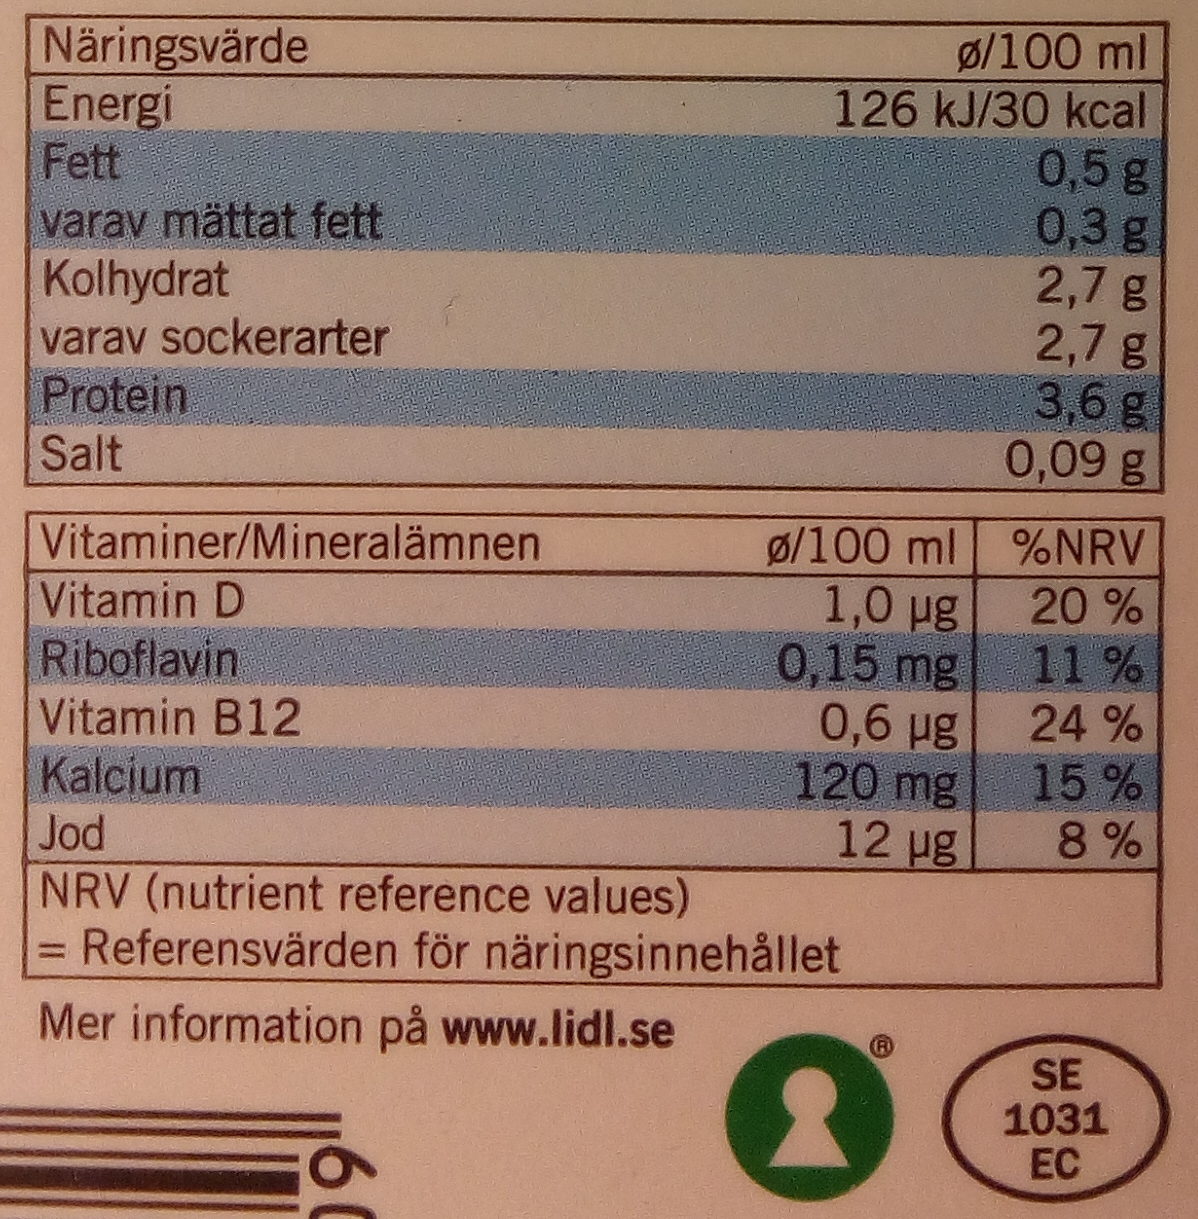 Ängens Laktosfri svensk lättmjölkdryck - Nutrition facts - sv